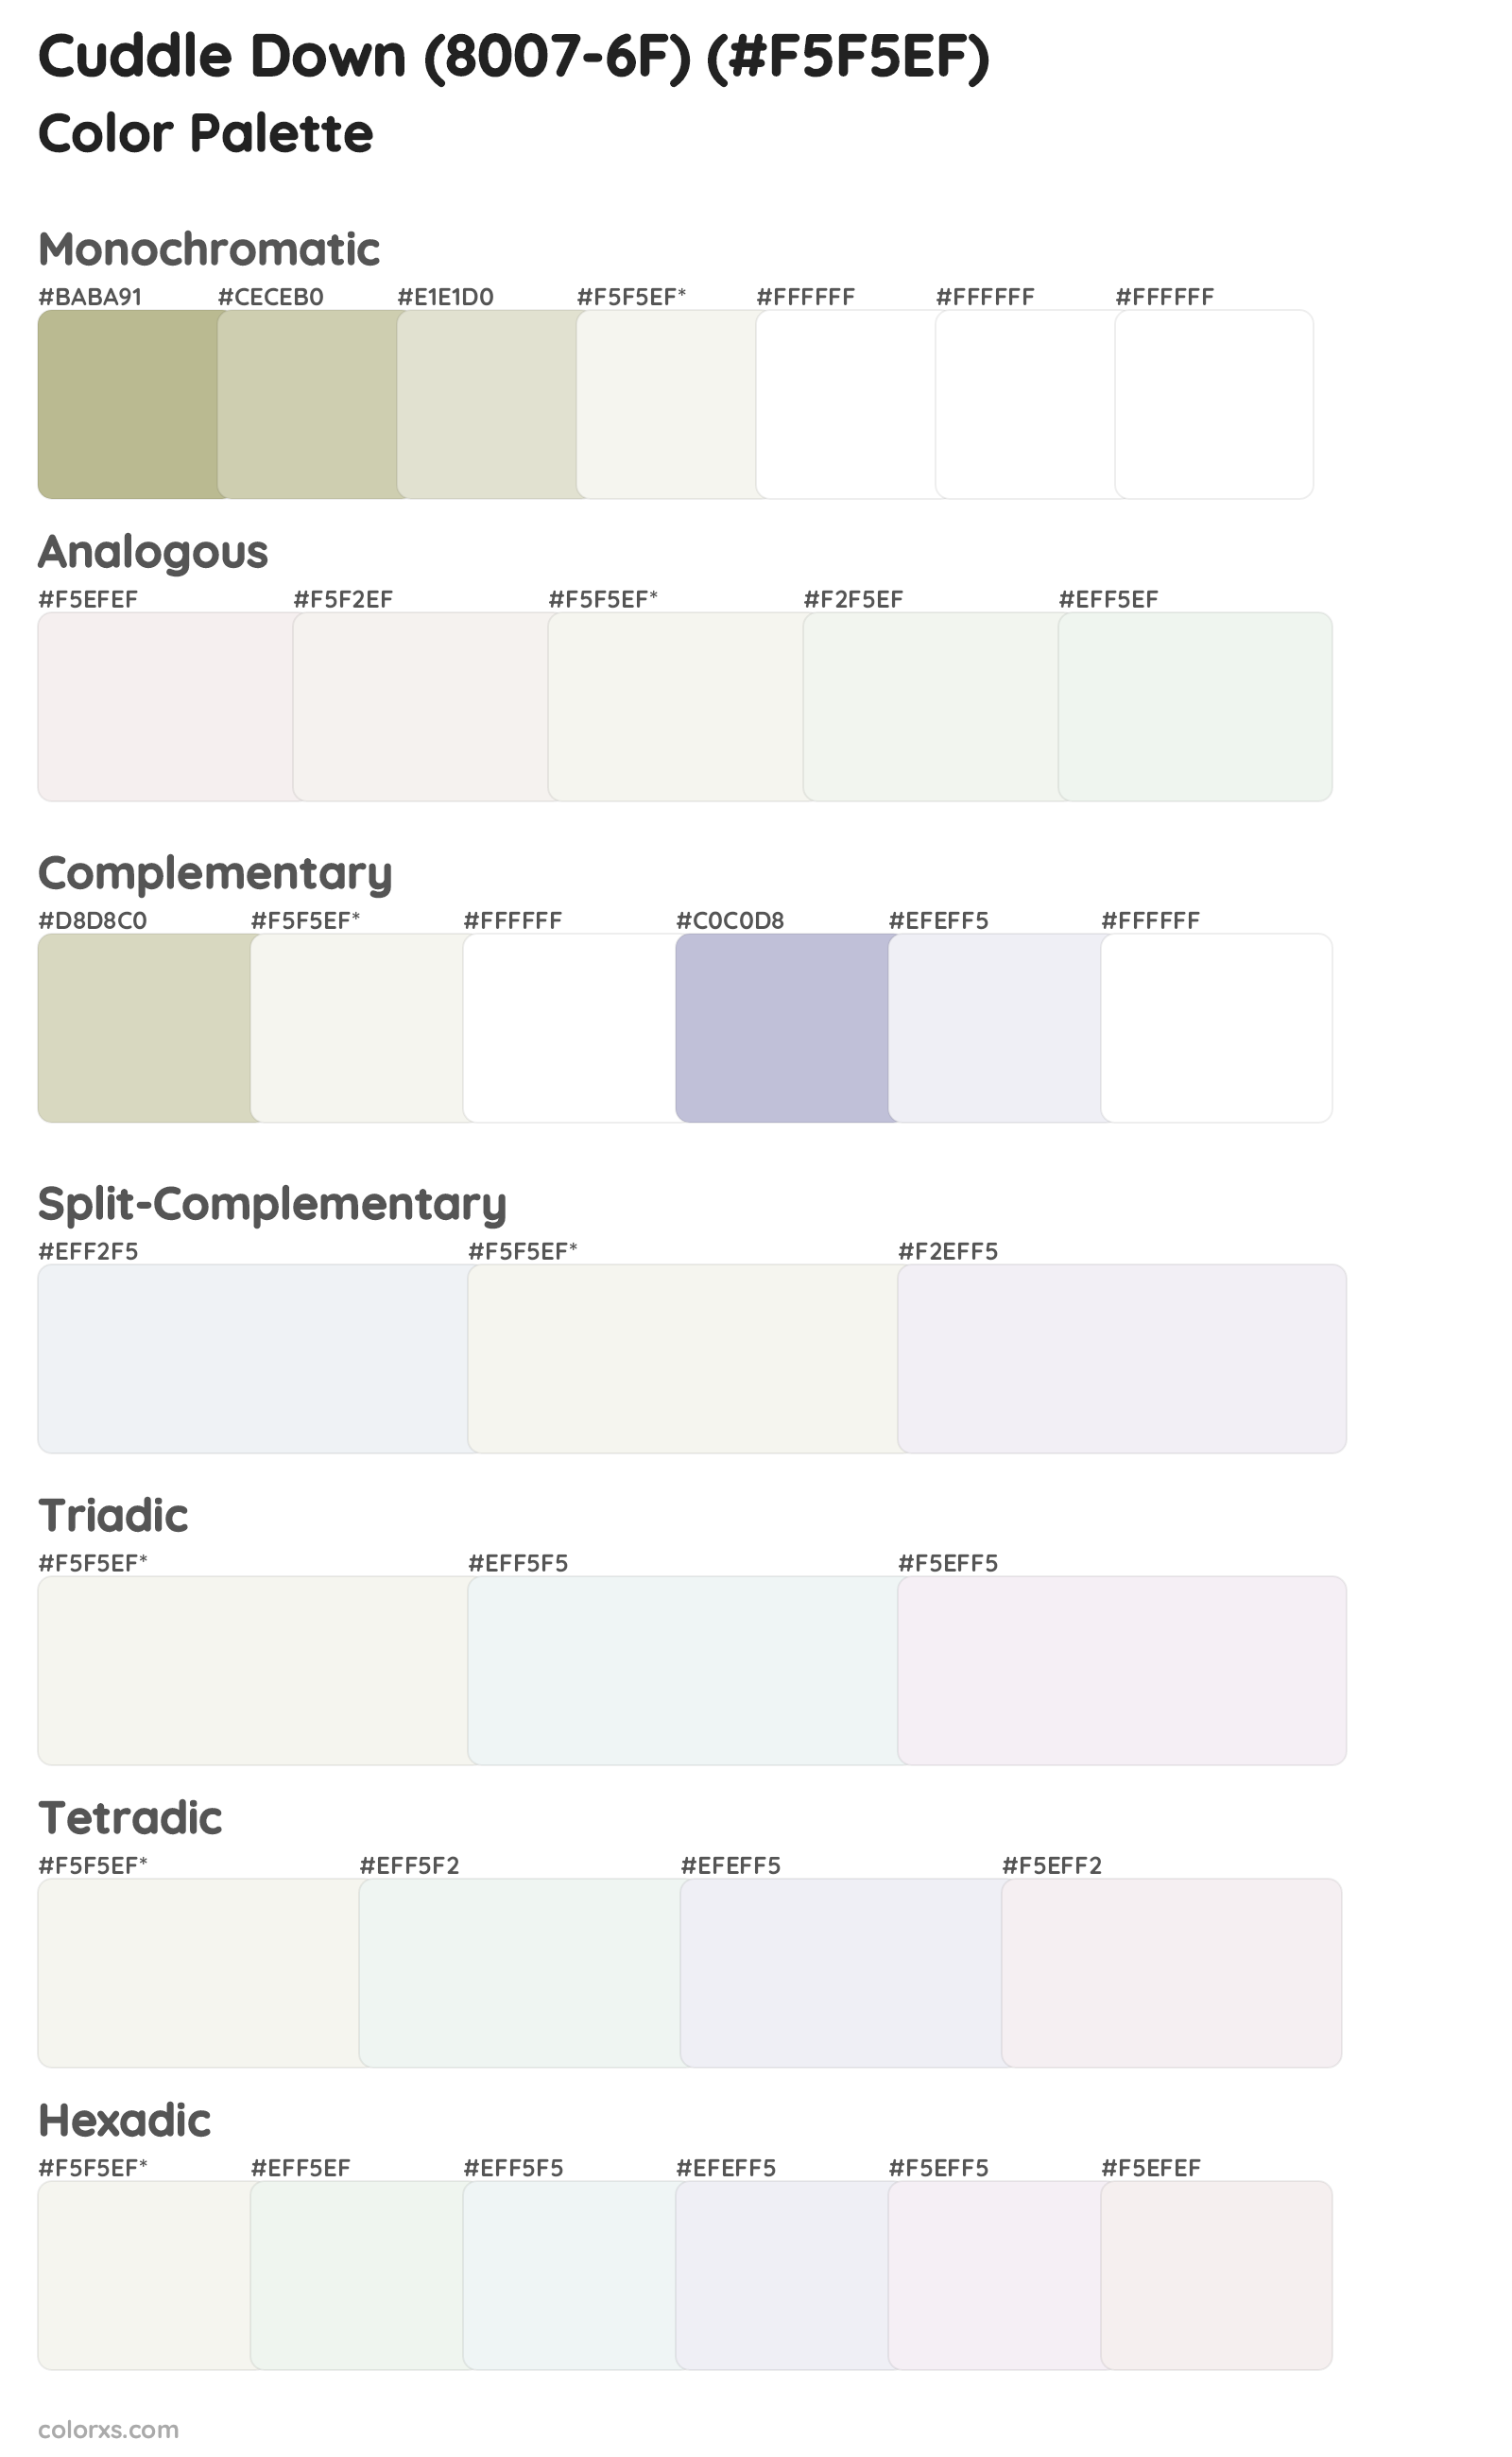 Cuddle Down (8007-6F) Color Scheme Palettes